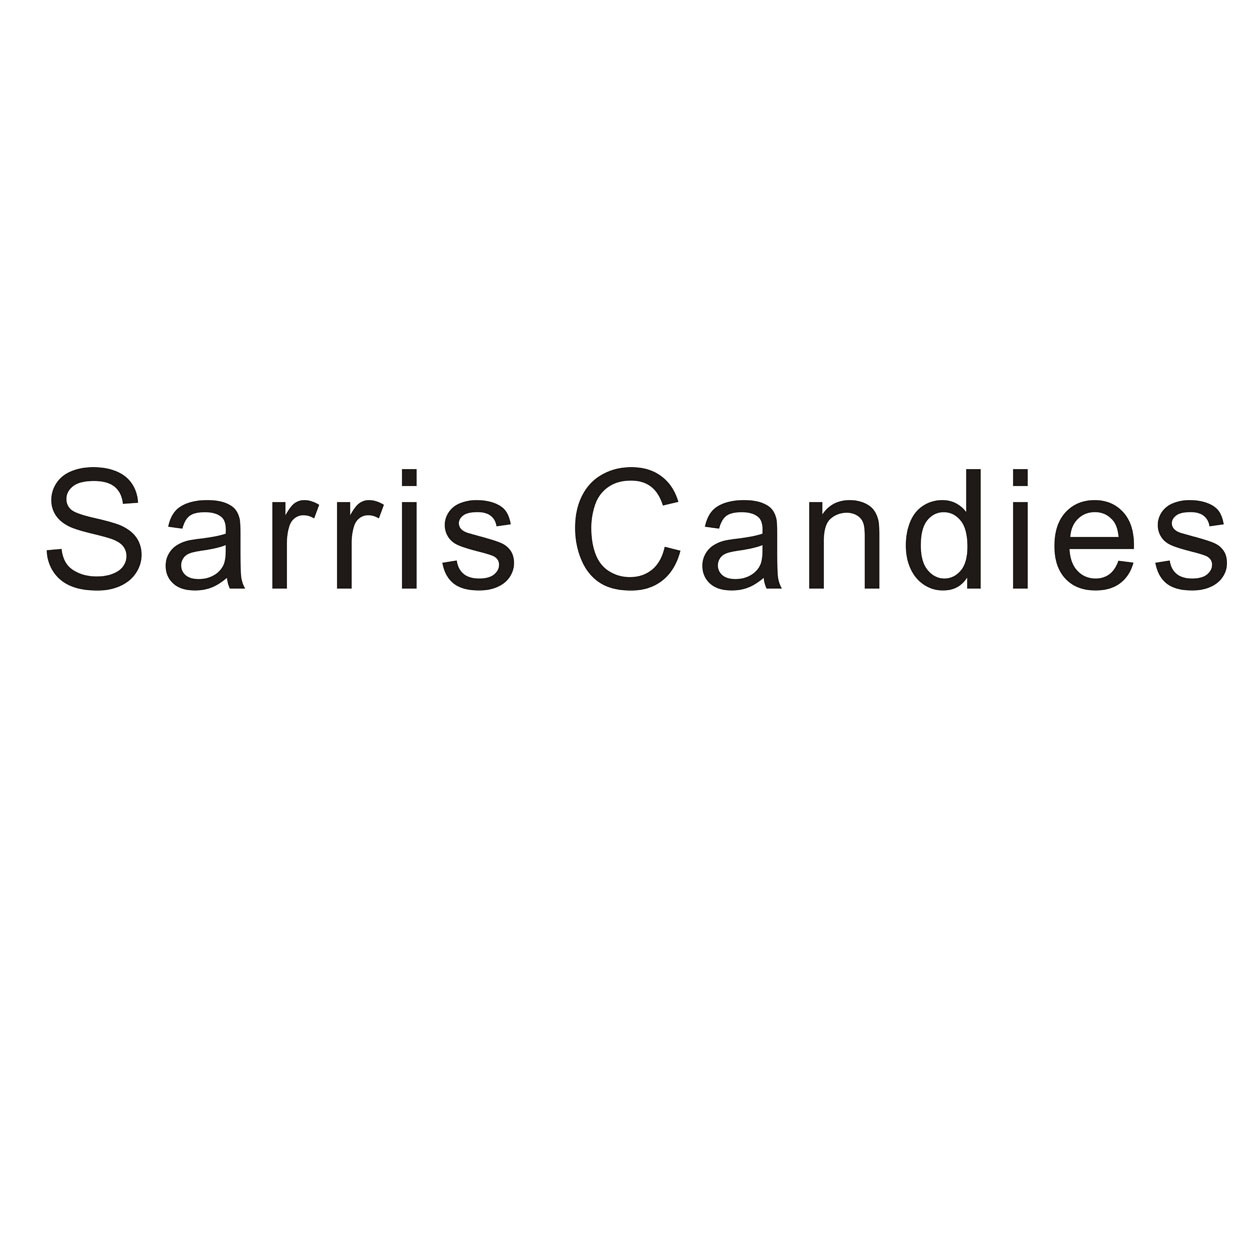 SARRIS CANDIES